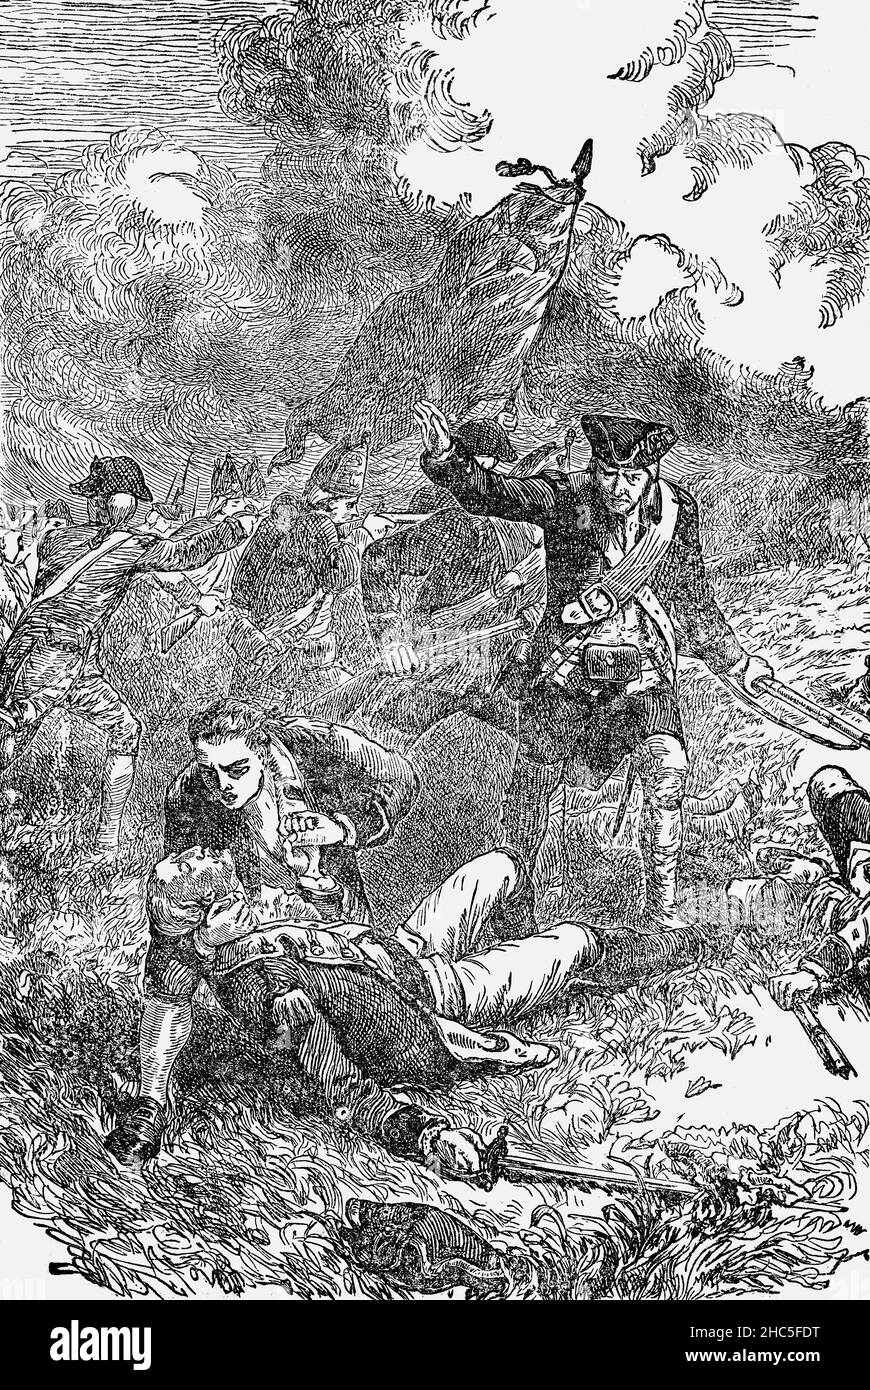 À la fin du siècle 19th, un officier du Service maritime, stationné à Boston (Massachusetts), a participé aux batailles de Lexington et Concord, qui ont marqué le début de la révolution américaine, pour illustrer la mort du major John Pitcairn (1722-1775).À la bataille de Bunker Hill près de Charlestown, Massachusetts, deux mois plus tard, il commanda une force de réserve d'environ 300 Marines et mena ses hommes sur la colline vers la position américaine.Quand il est entré dans les tranchées, il a été tiré quatre fois, y compris la blessure finale à la tête, dit avoir été tiré par un ancien esclave appelé Peter Salem. Banque D'Images